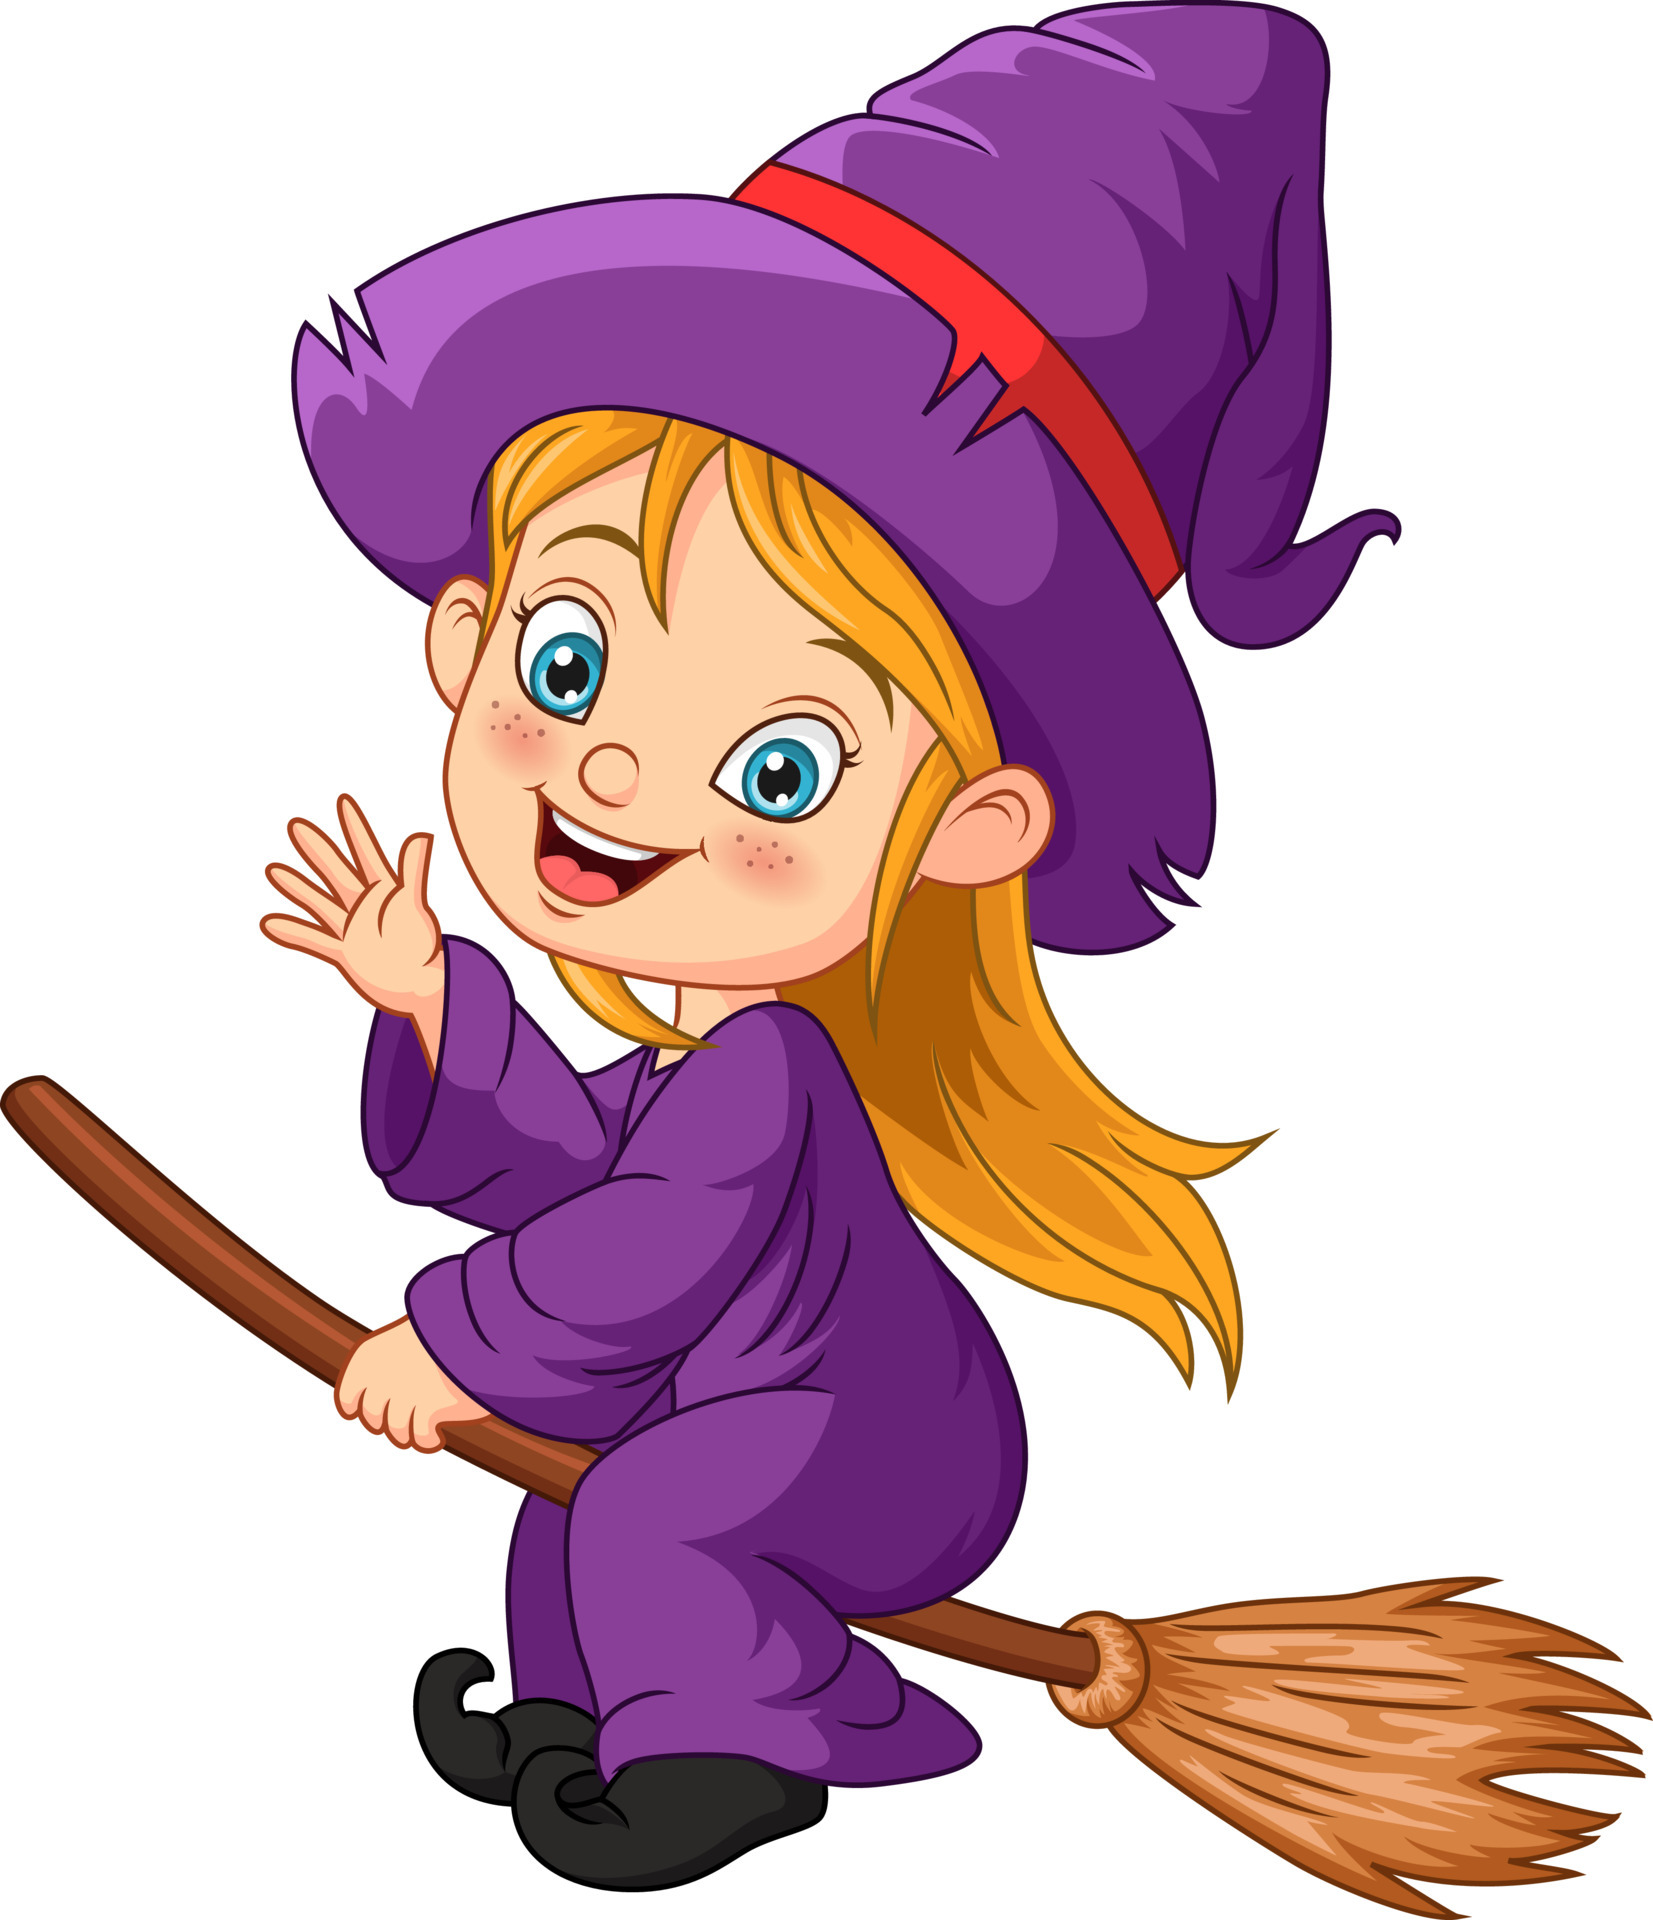 Cartoon Halloween witch girl flying on broom 5112986 Vector Art at Vecteezy